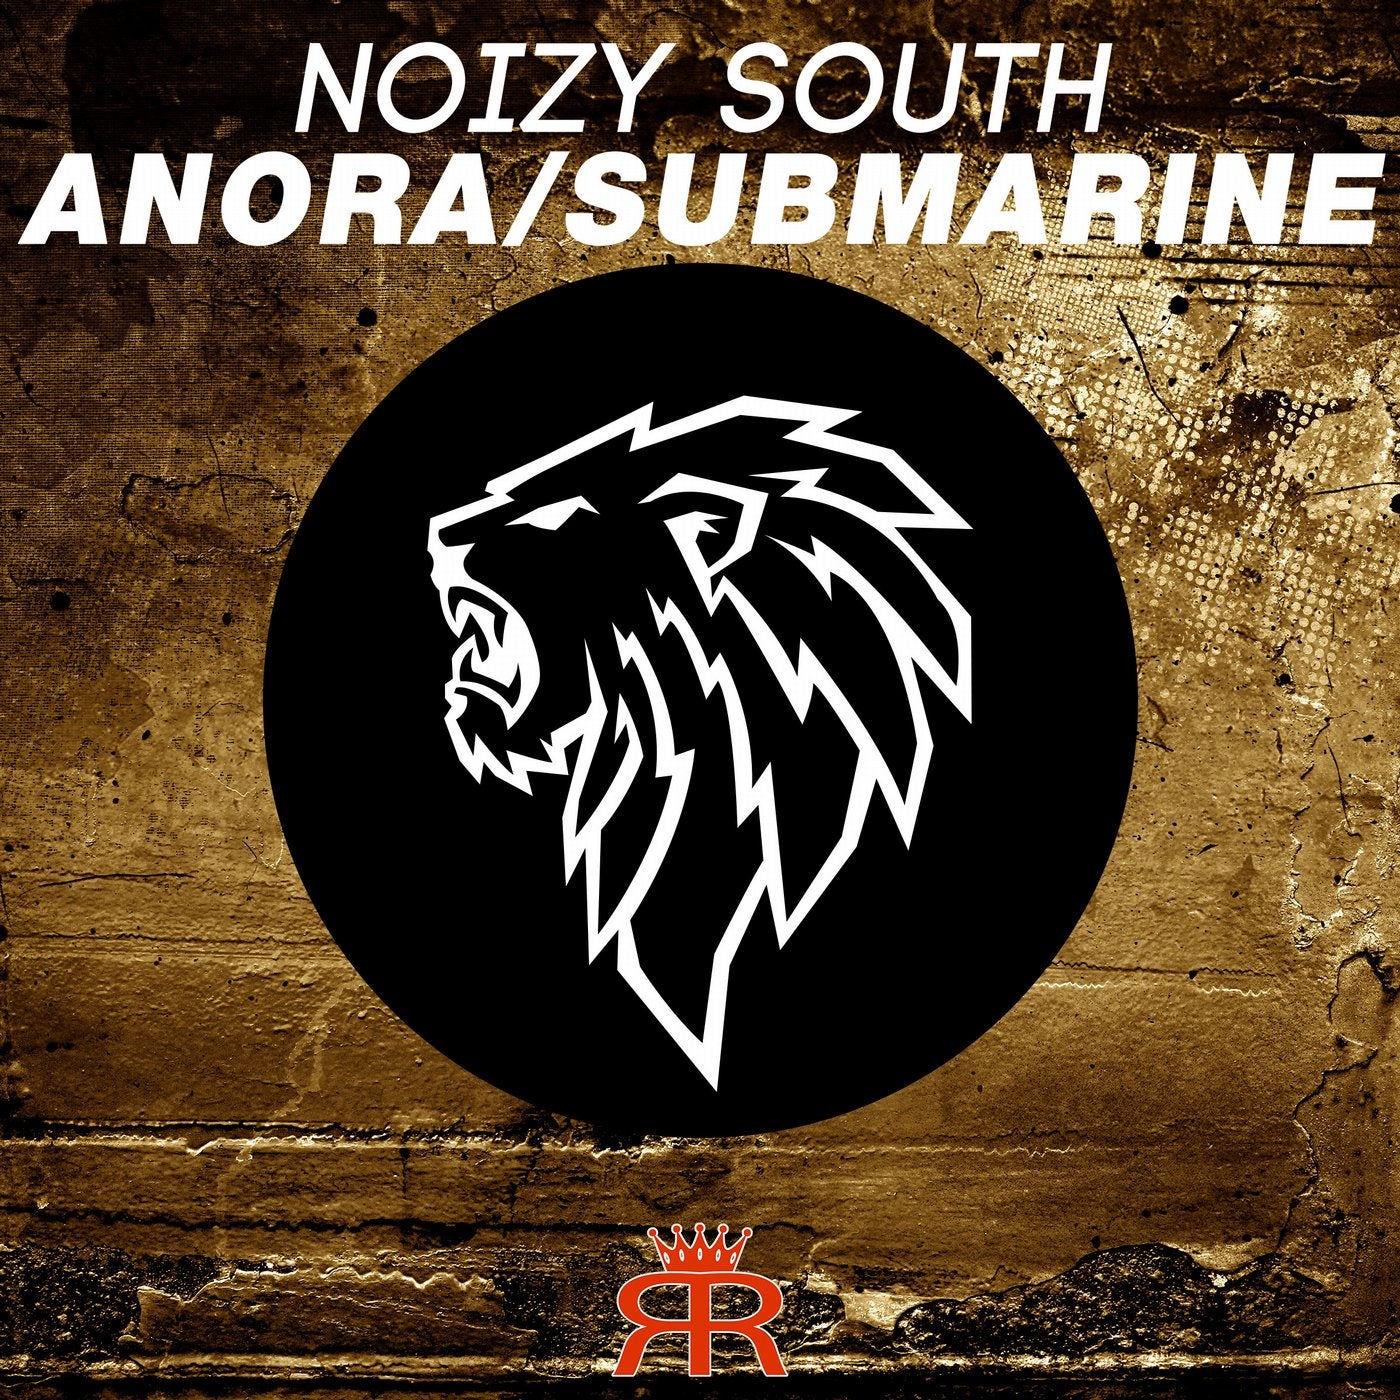 Anora / Submarine